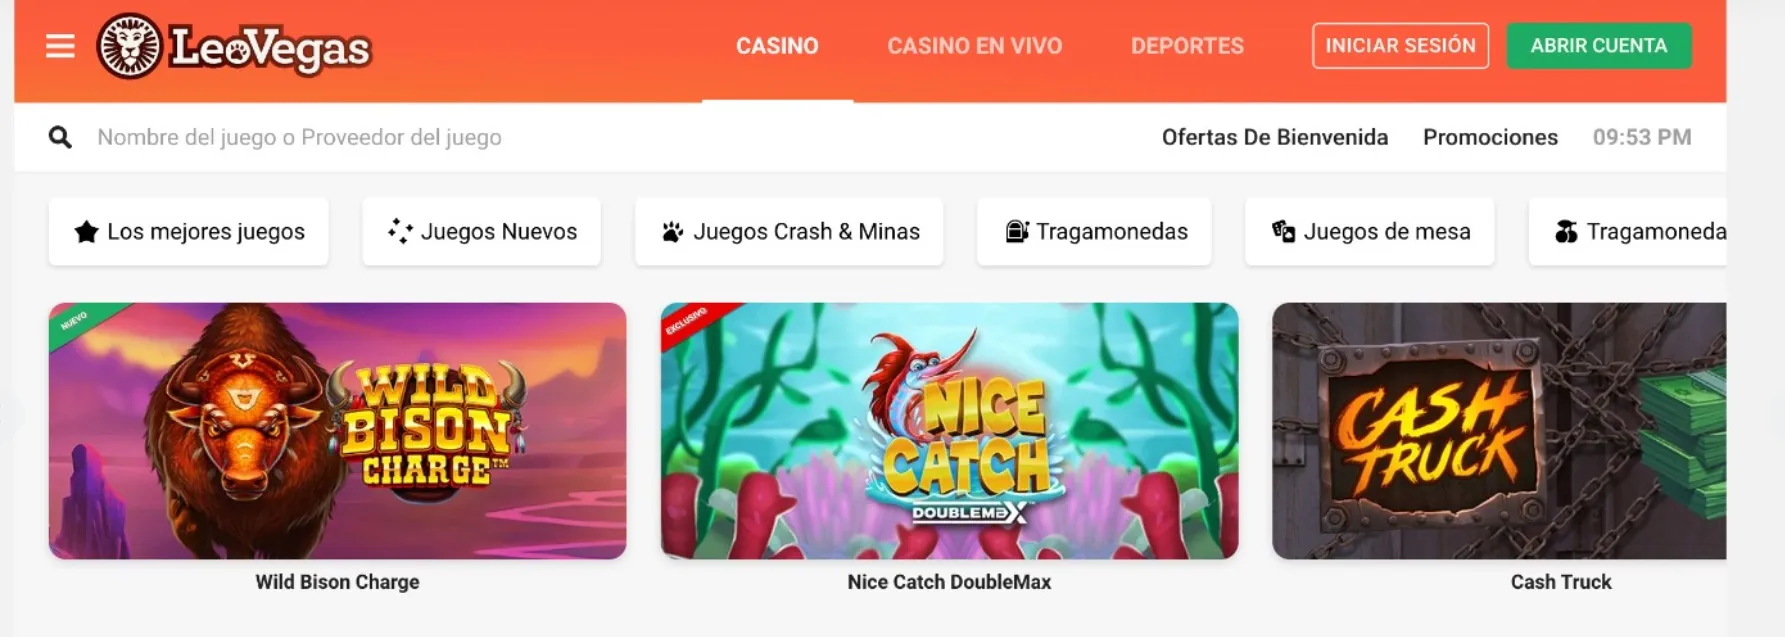 LeoVegas casino online 